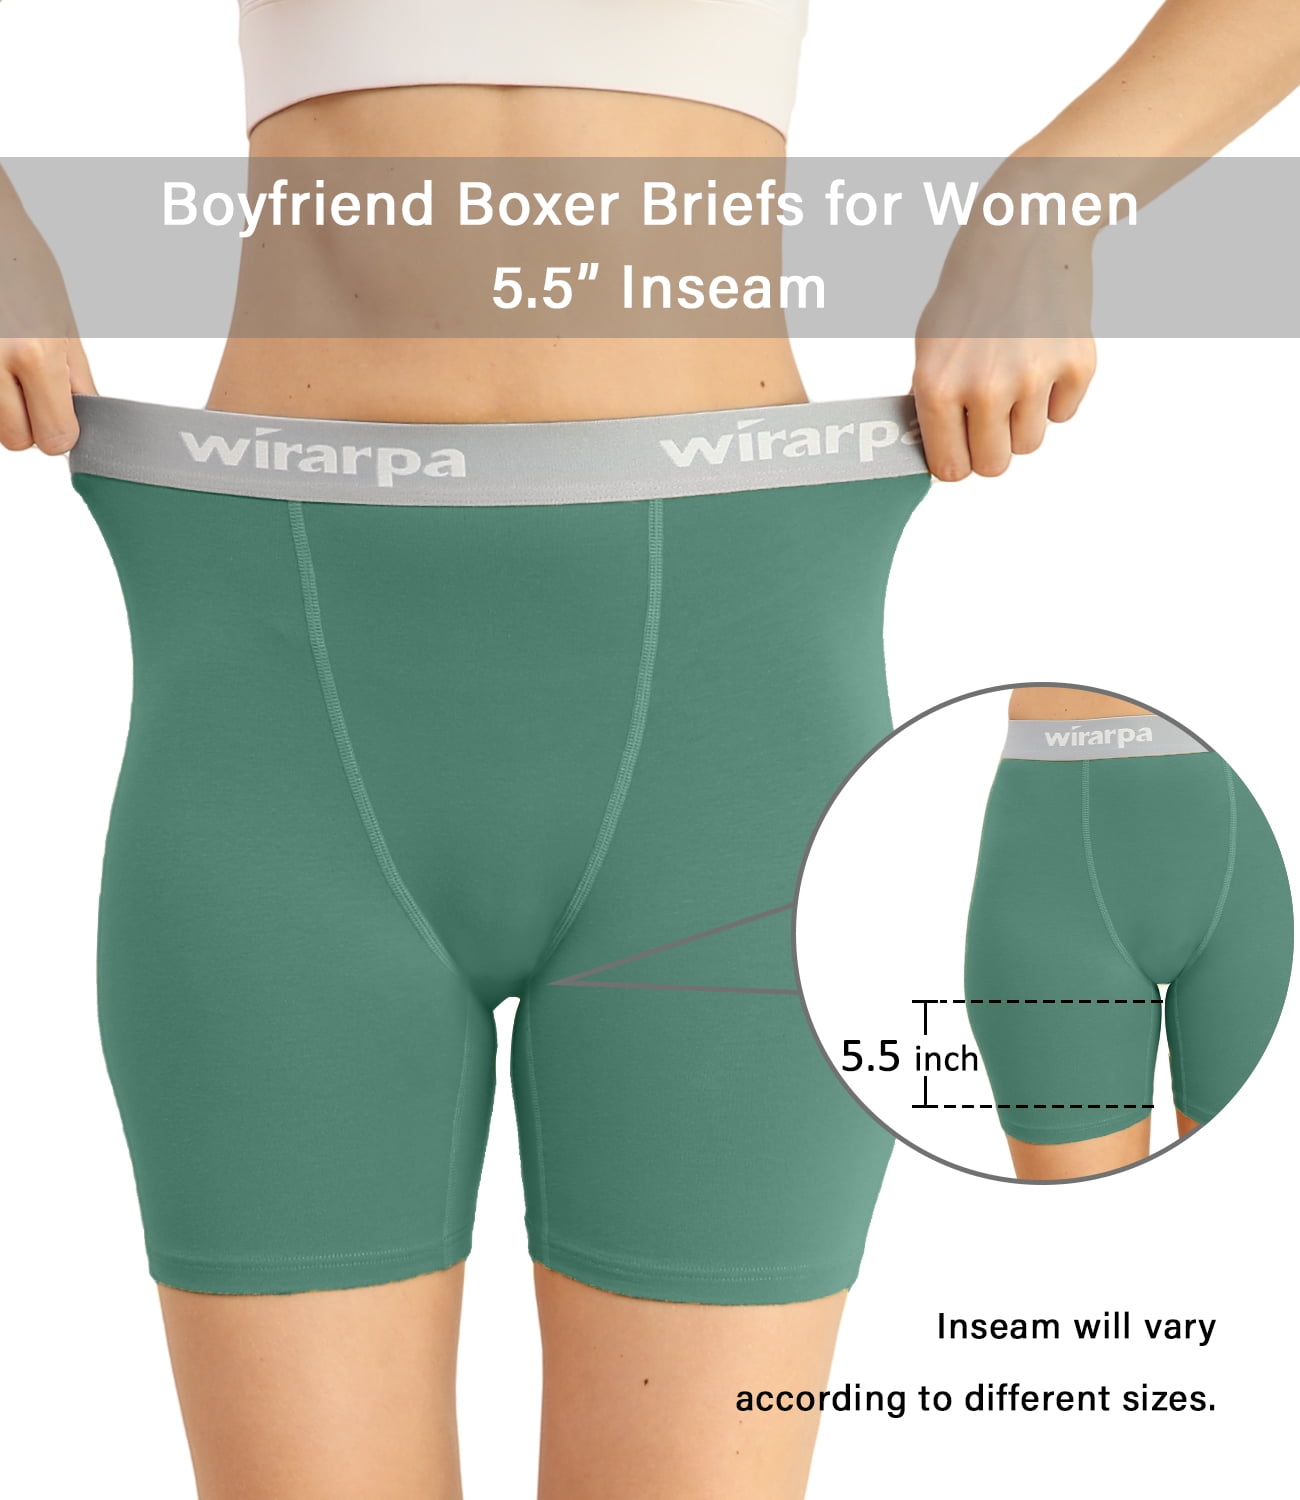 wirarpa Women's Cotton Boxer Briefs Underwear Boy India